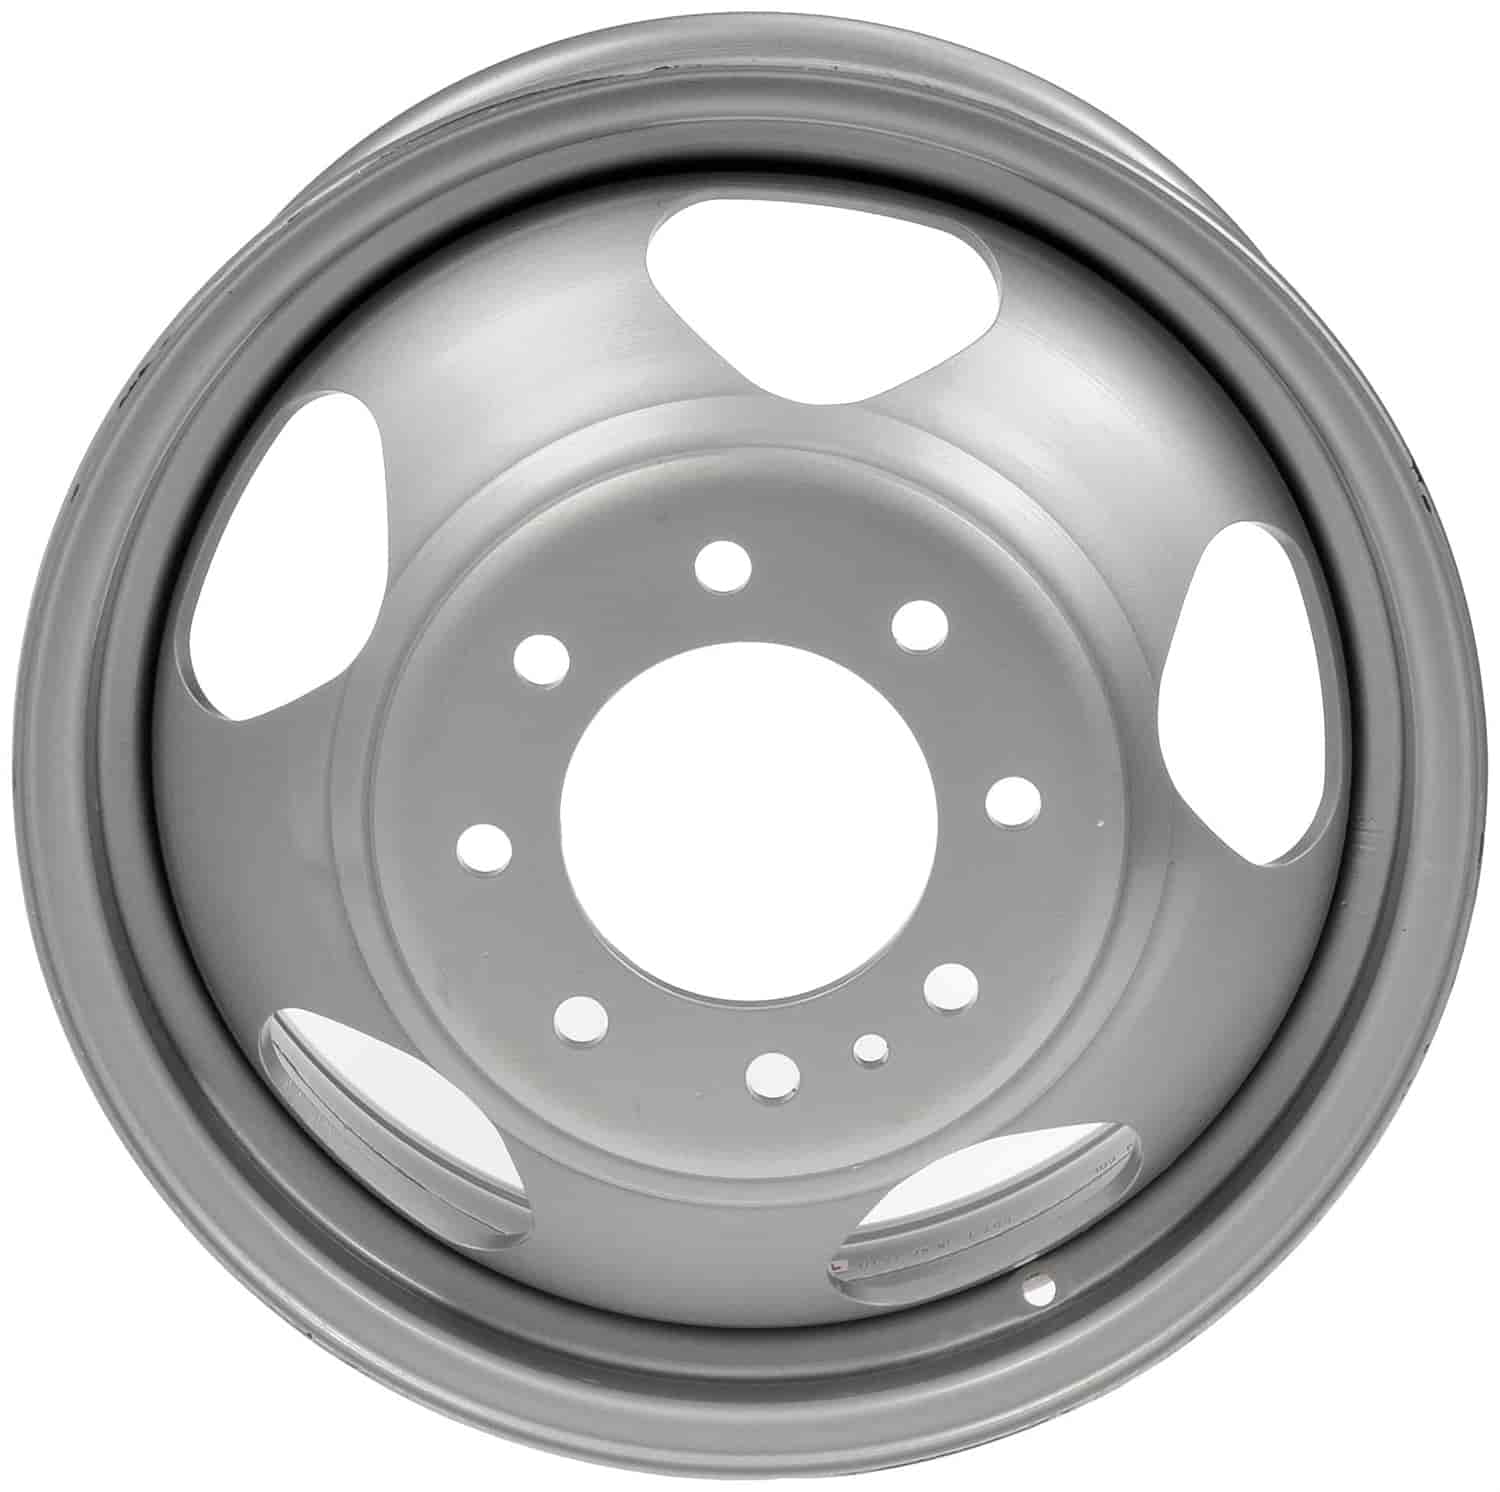 Steel Wheel 17" x 6.5" 2008-2010 GM Silverado/Sierra 3500 HD - Gray